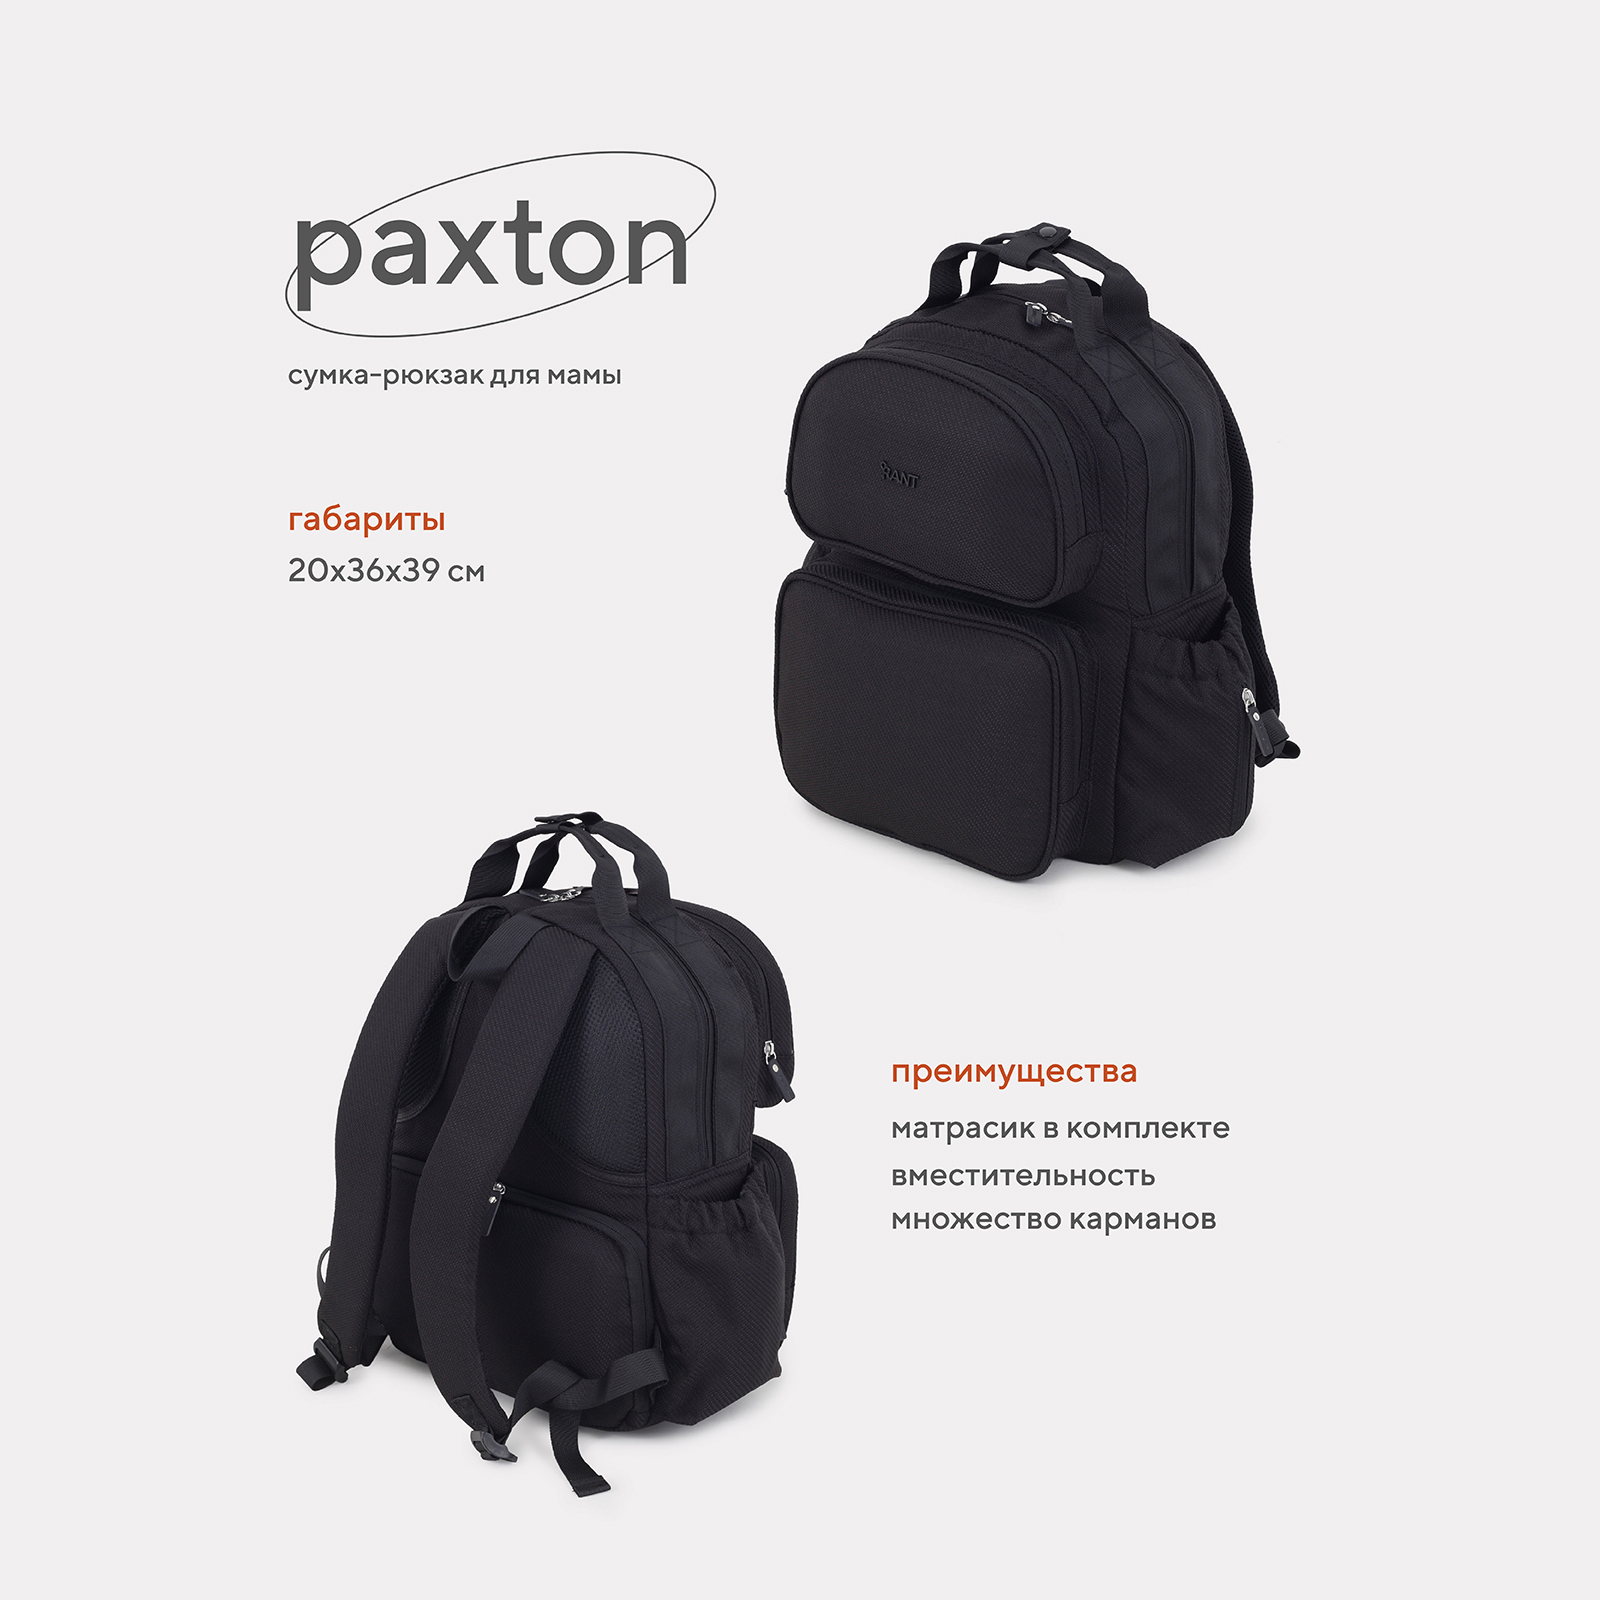 Сумка-рюкзак для мамы RANT Paxton RB008 Black сумка рюкзак для мамы rant paxton rb008 green